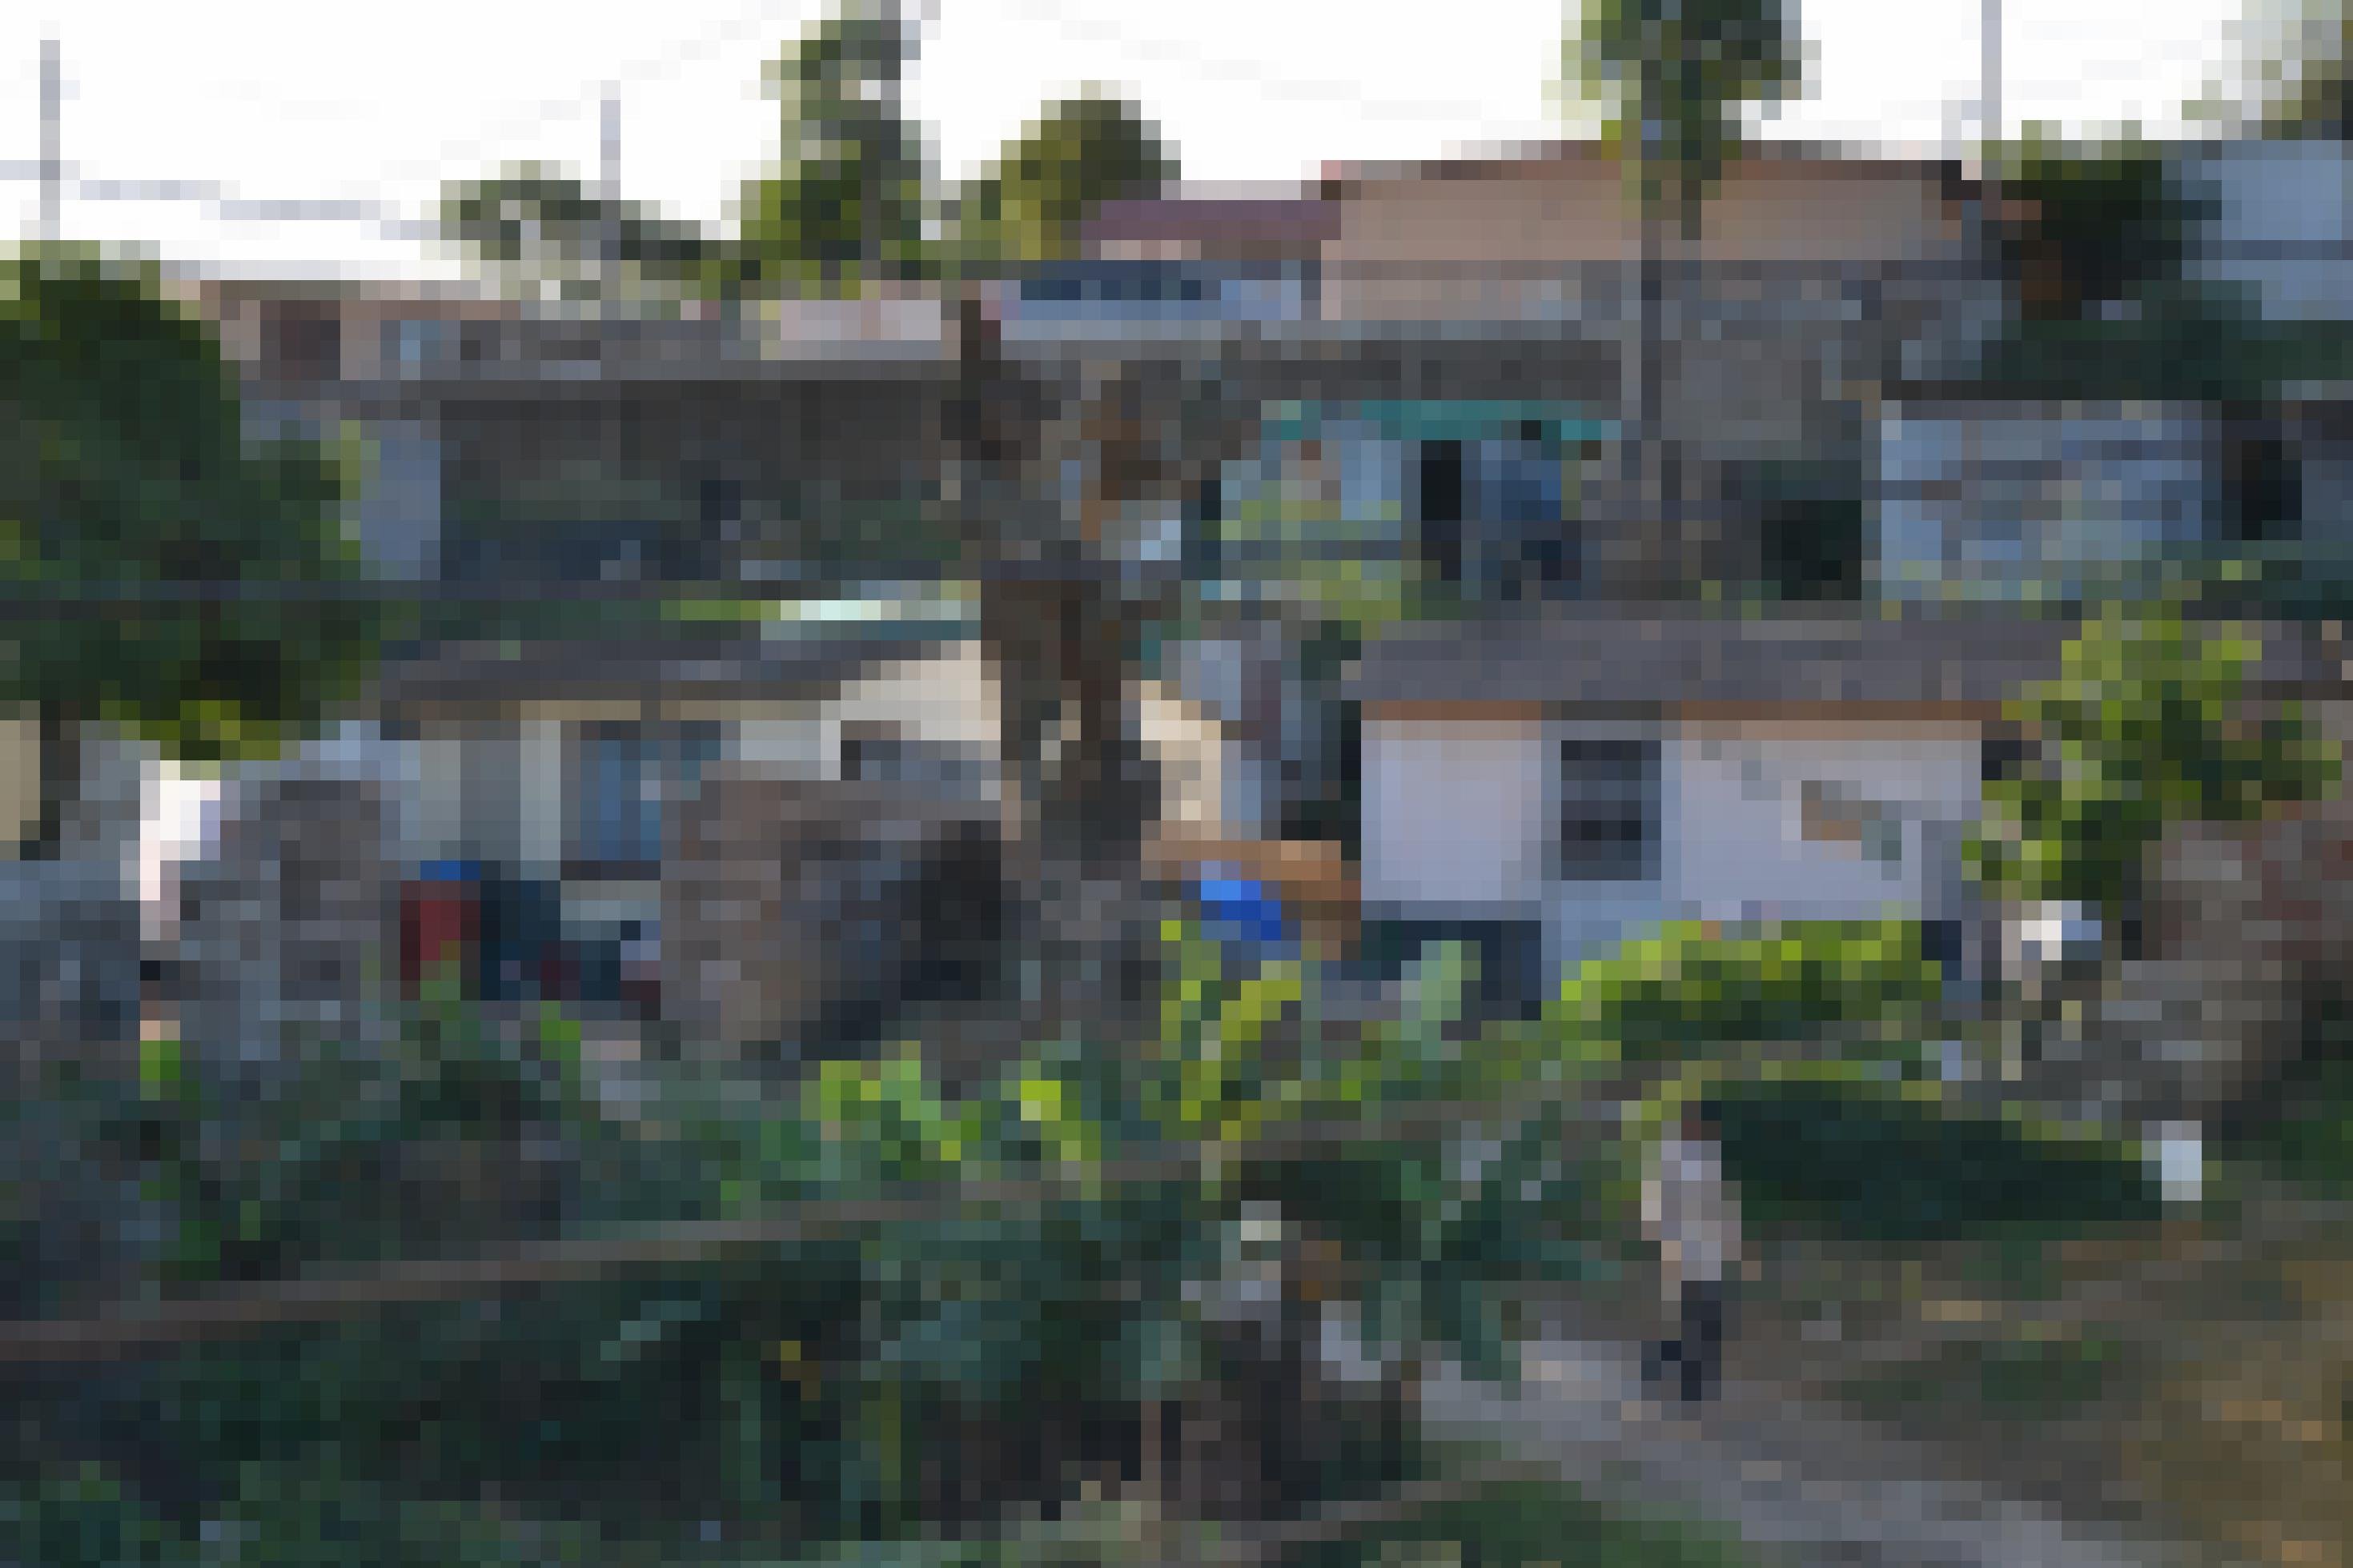 Kleine eng stehende Häuser charakterisieren dieses Township in Südafrika